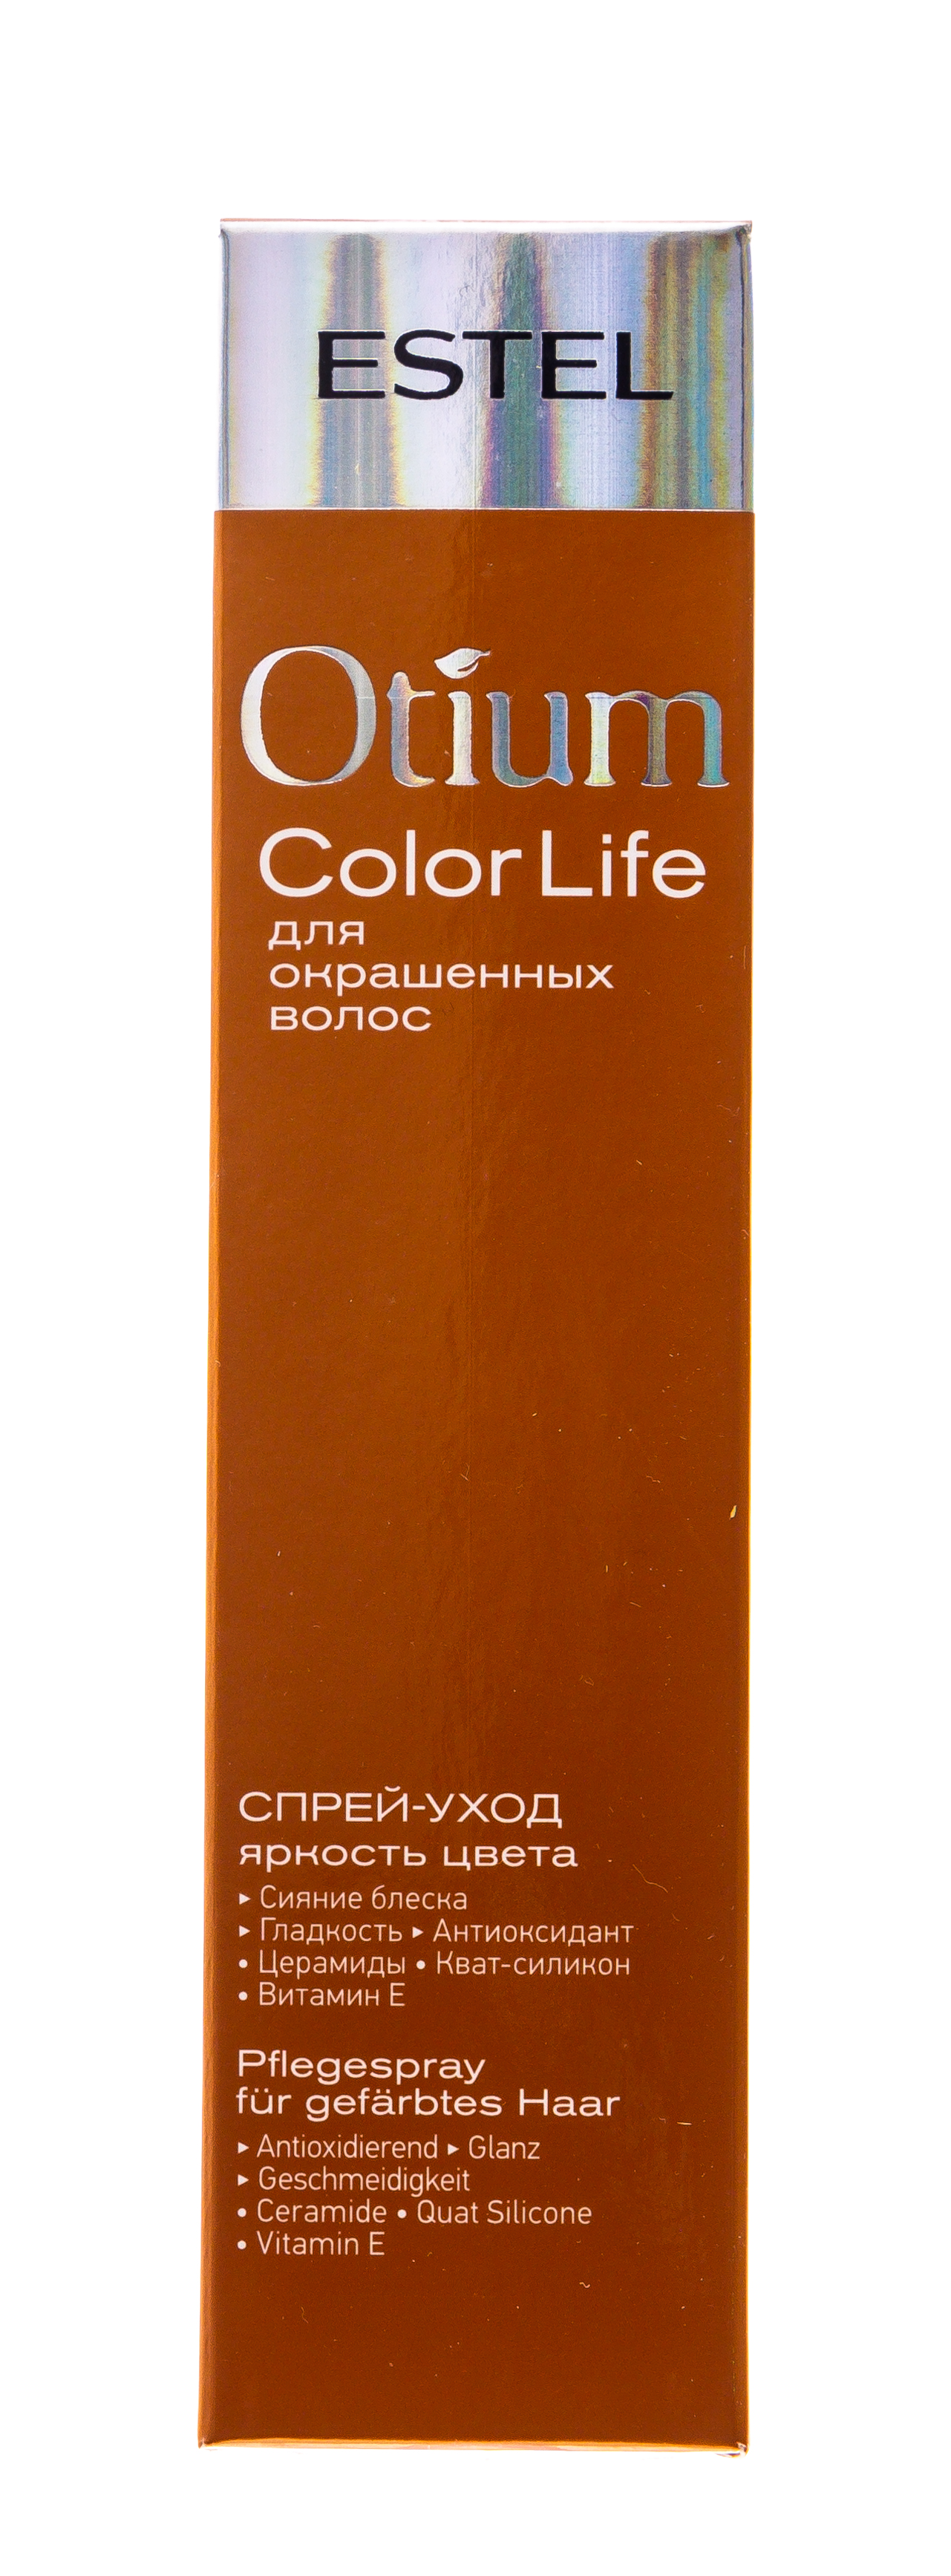 Estel Спрей-уход для волос Яркость цвета Color life, 100 мл. фото